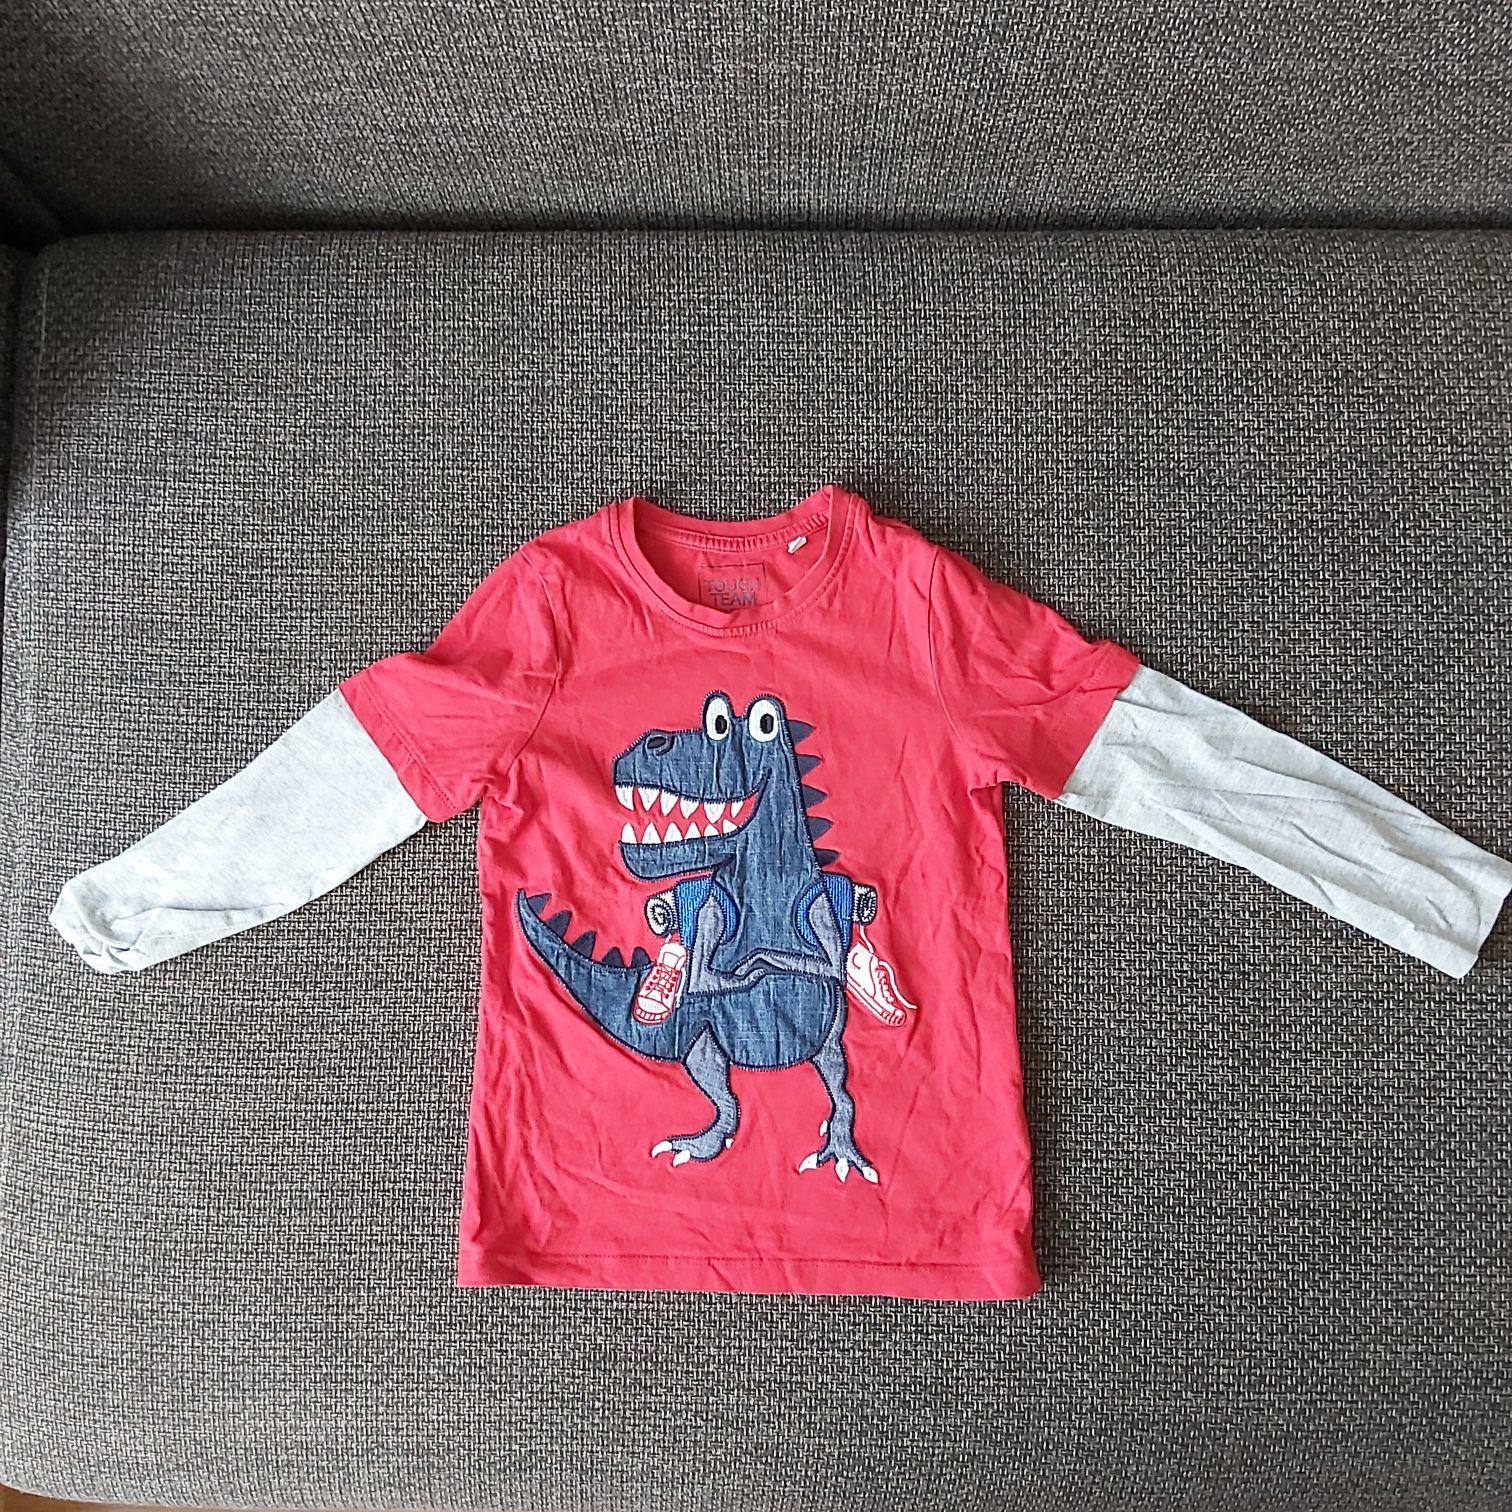 Bluzki dla dziecka z długim rękawem rozmiar 128cm.